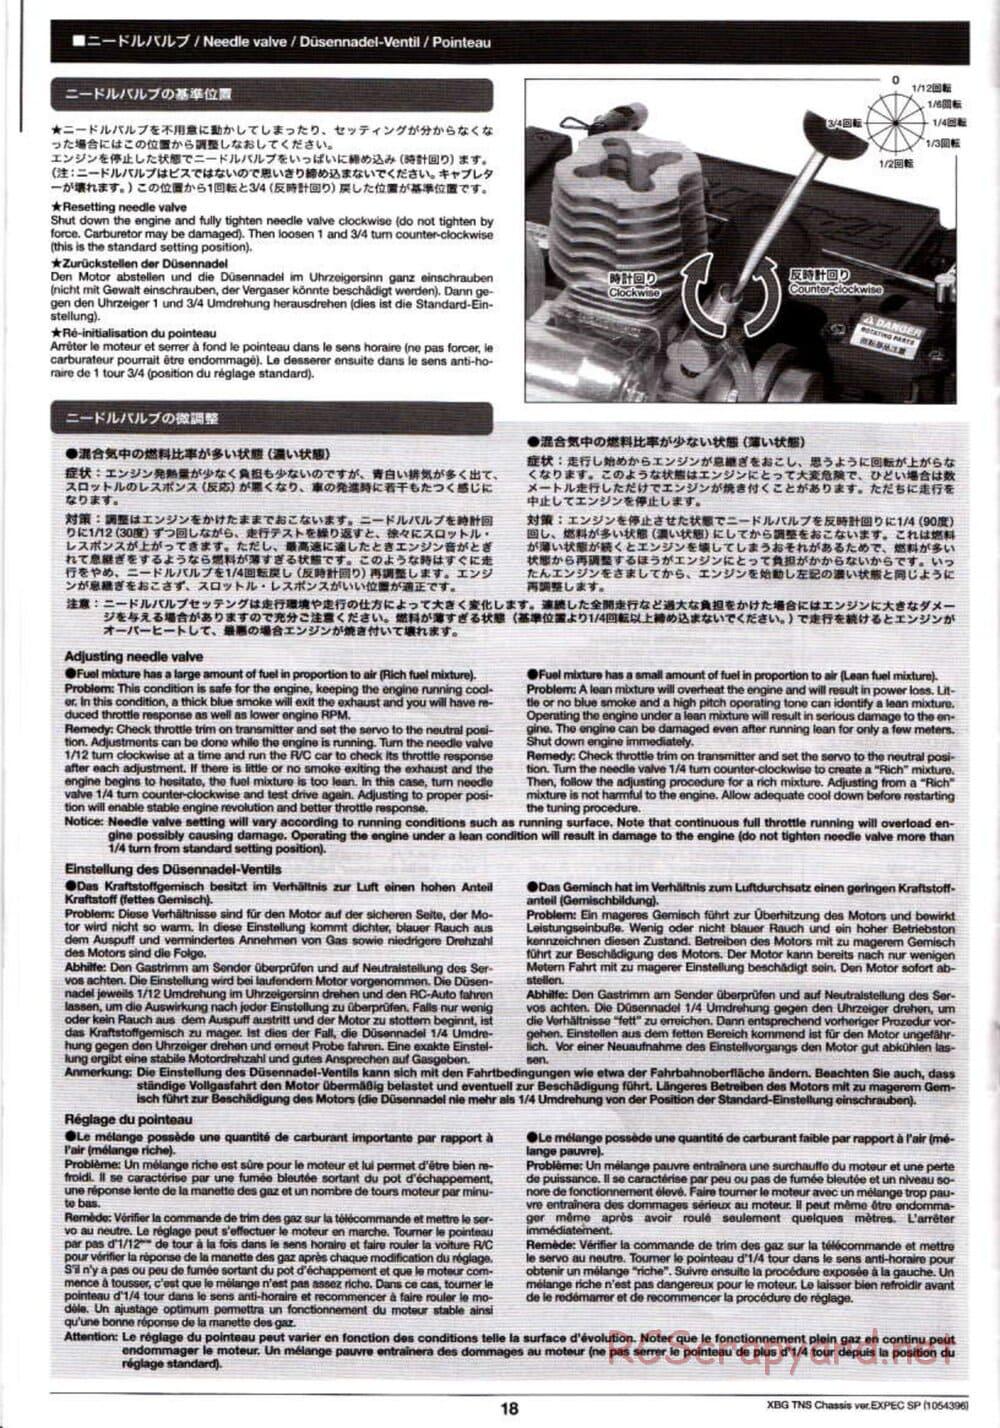 Tamiya - TNS Chassis - Manual - Page 18